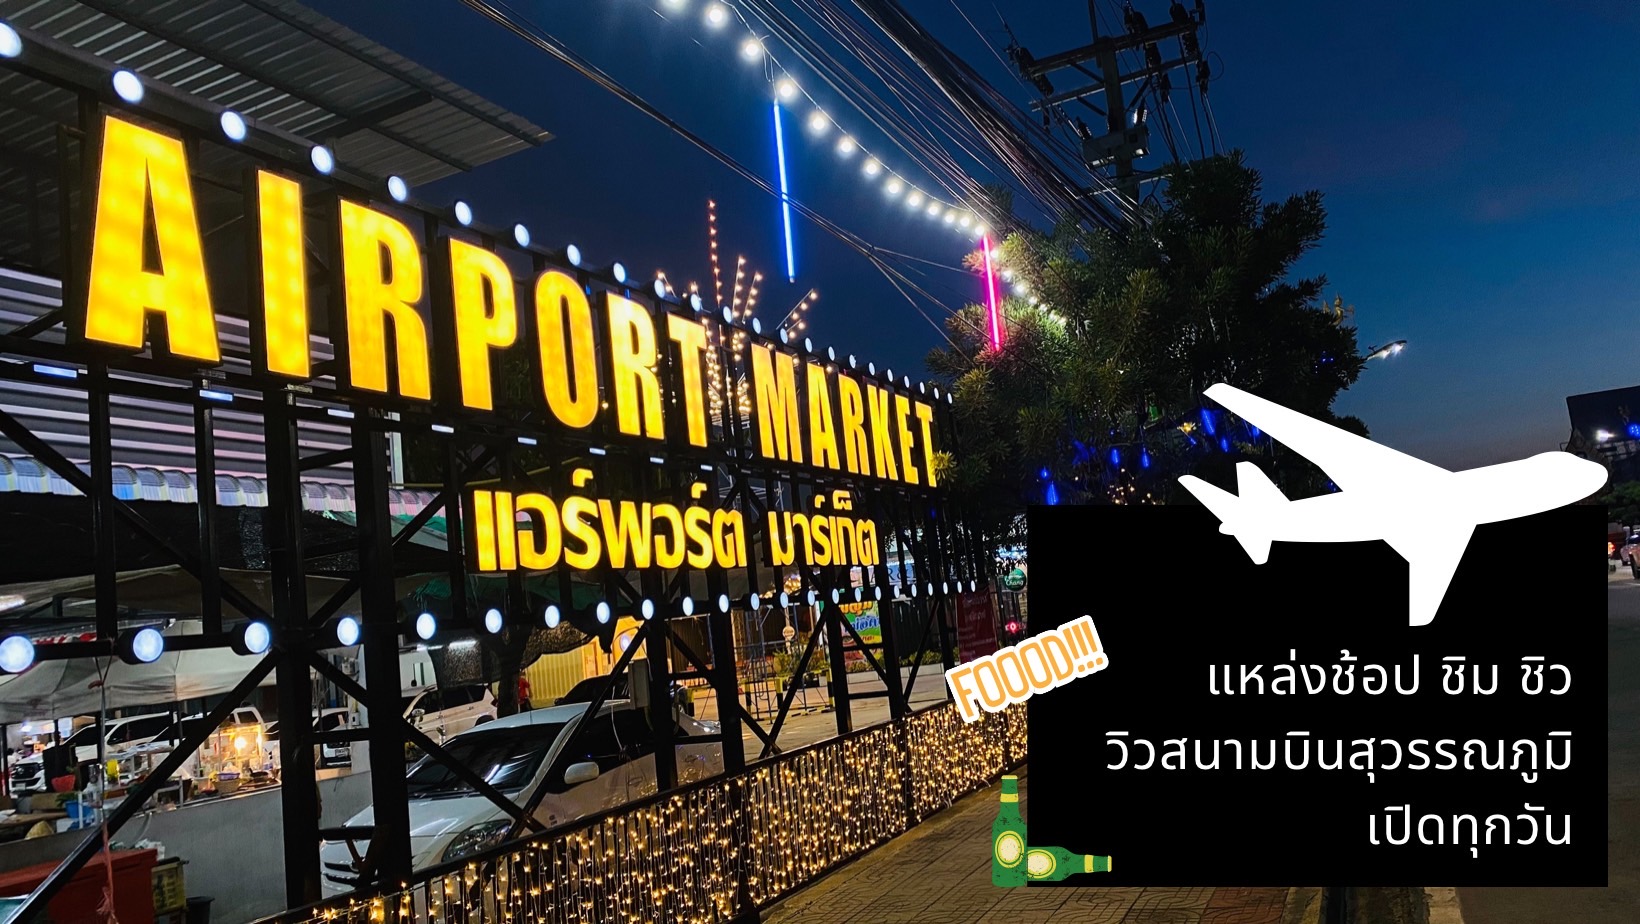 แอร์พอร์ตมาร์เก็ต (Airport Market) : สมุทรปราการ (Samut Prakan)